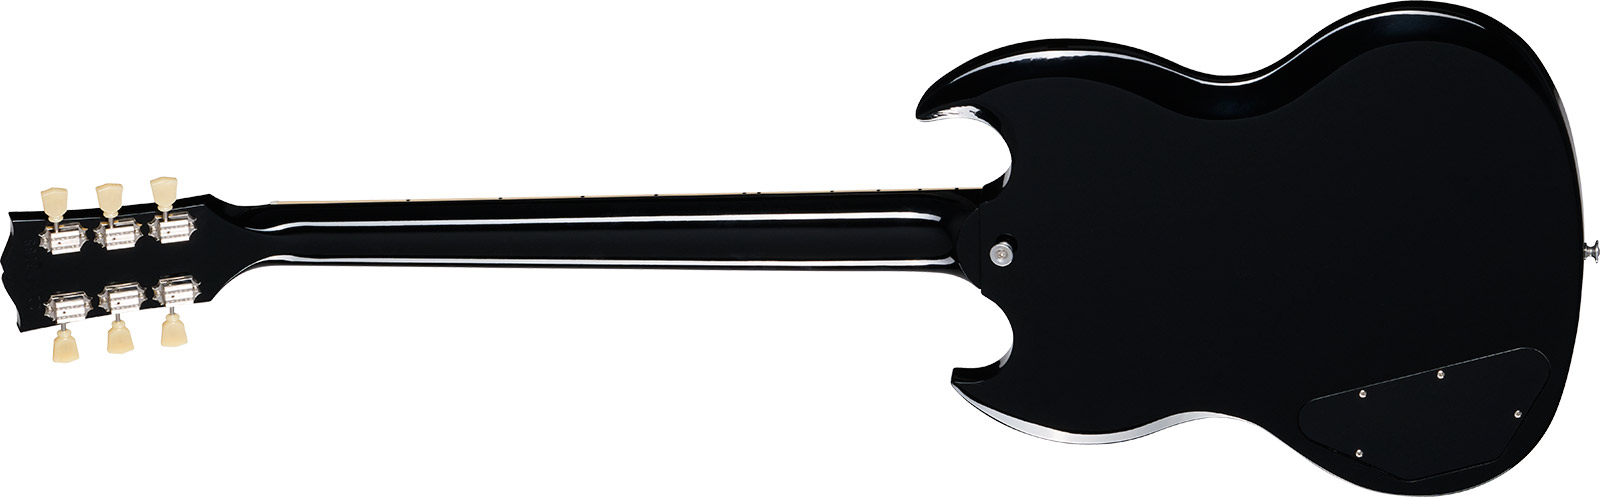 Gibson Sg Standard 1961 Custom Color 2h Ht Rw - Pelham Blue Burst - Guitarra eléctrica de doble corte. - Variation 1